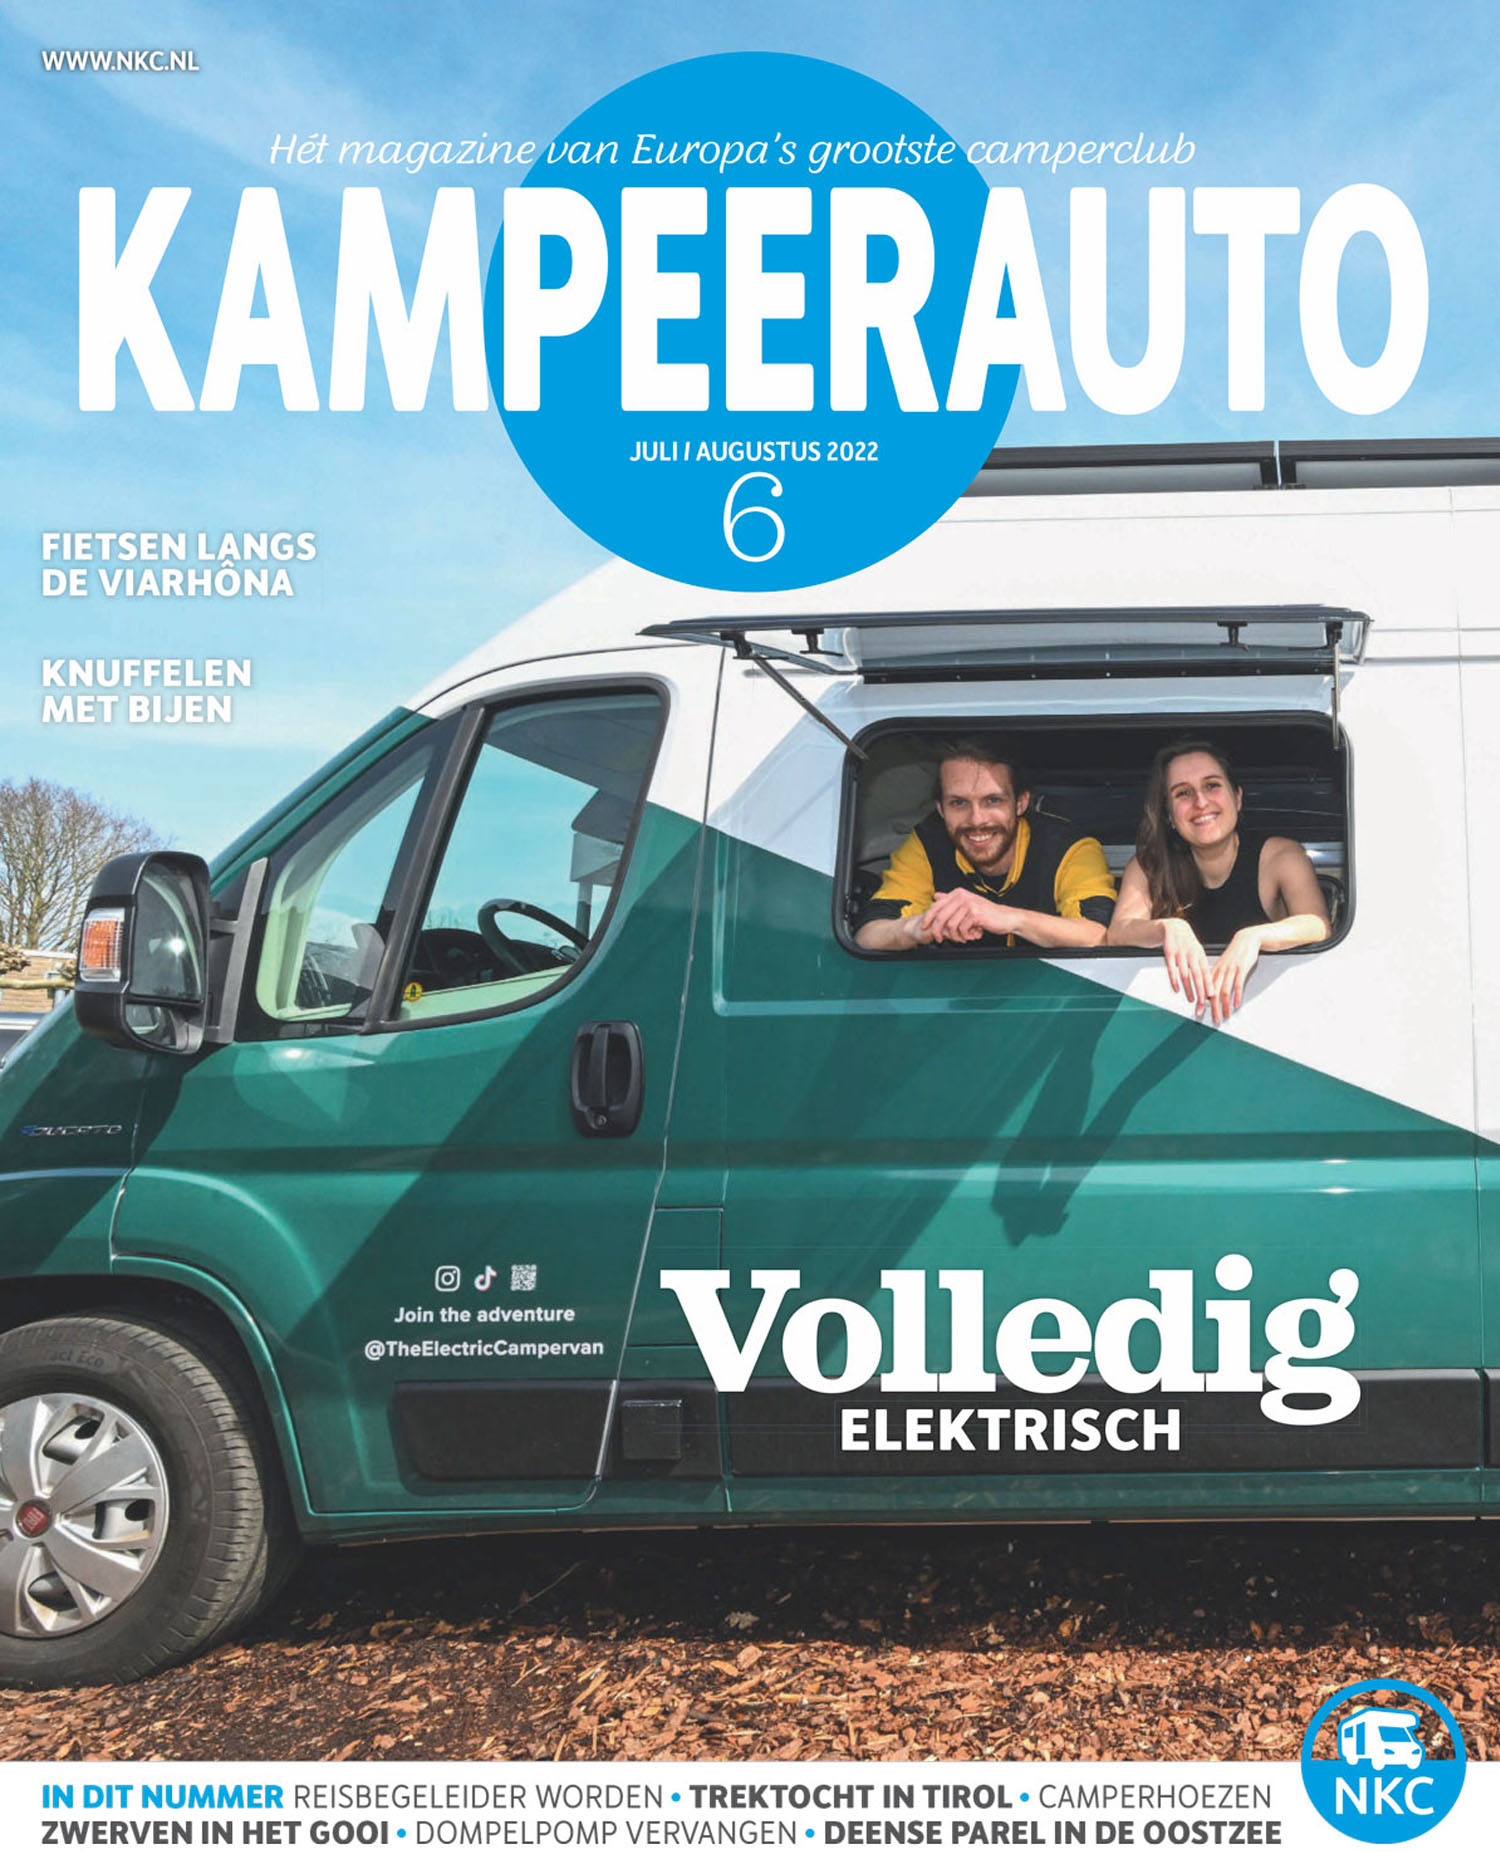 Ons Magazine 'Kampeerauto' - NKC